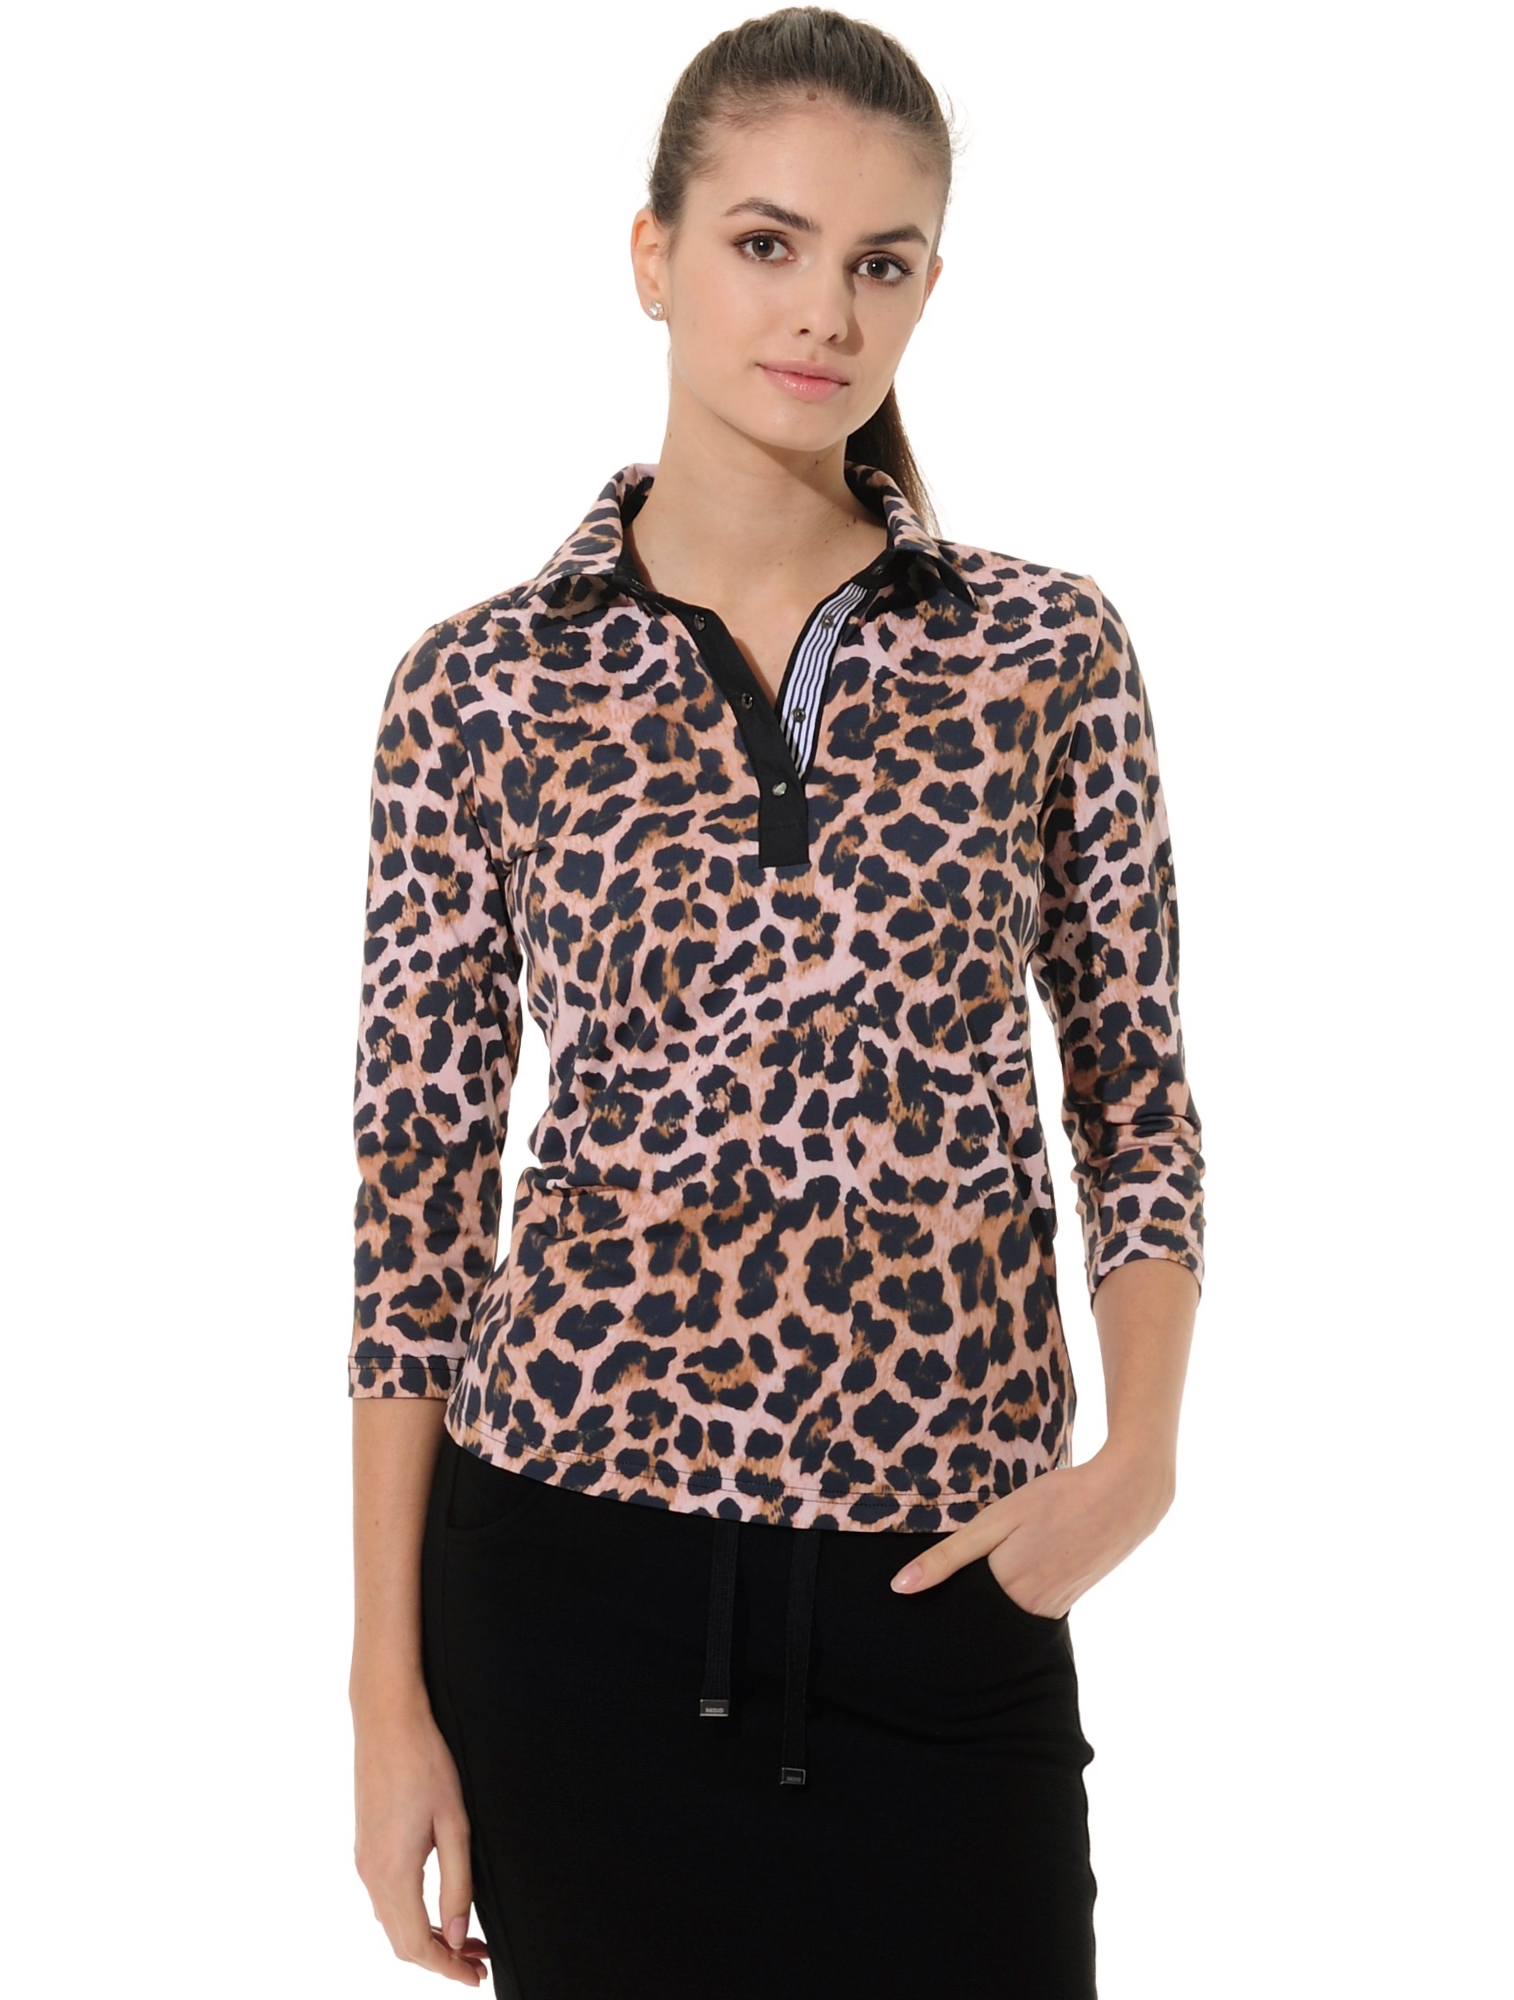 Leopard Print Golf Poloshirt natural